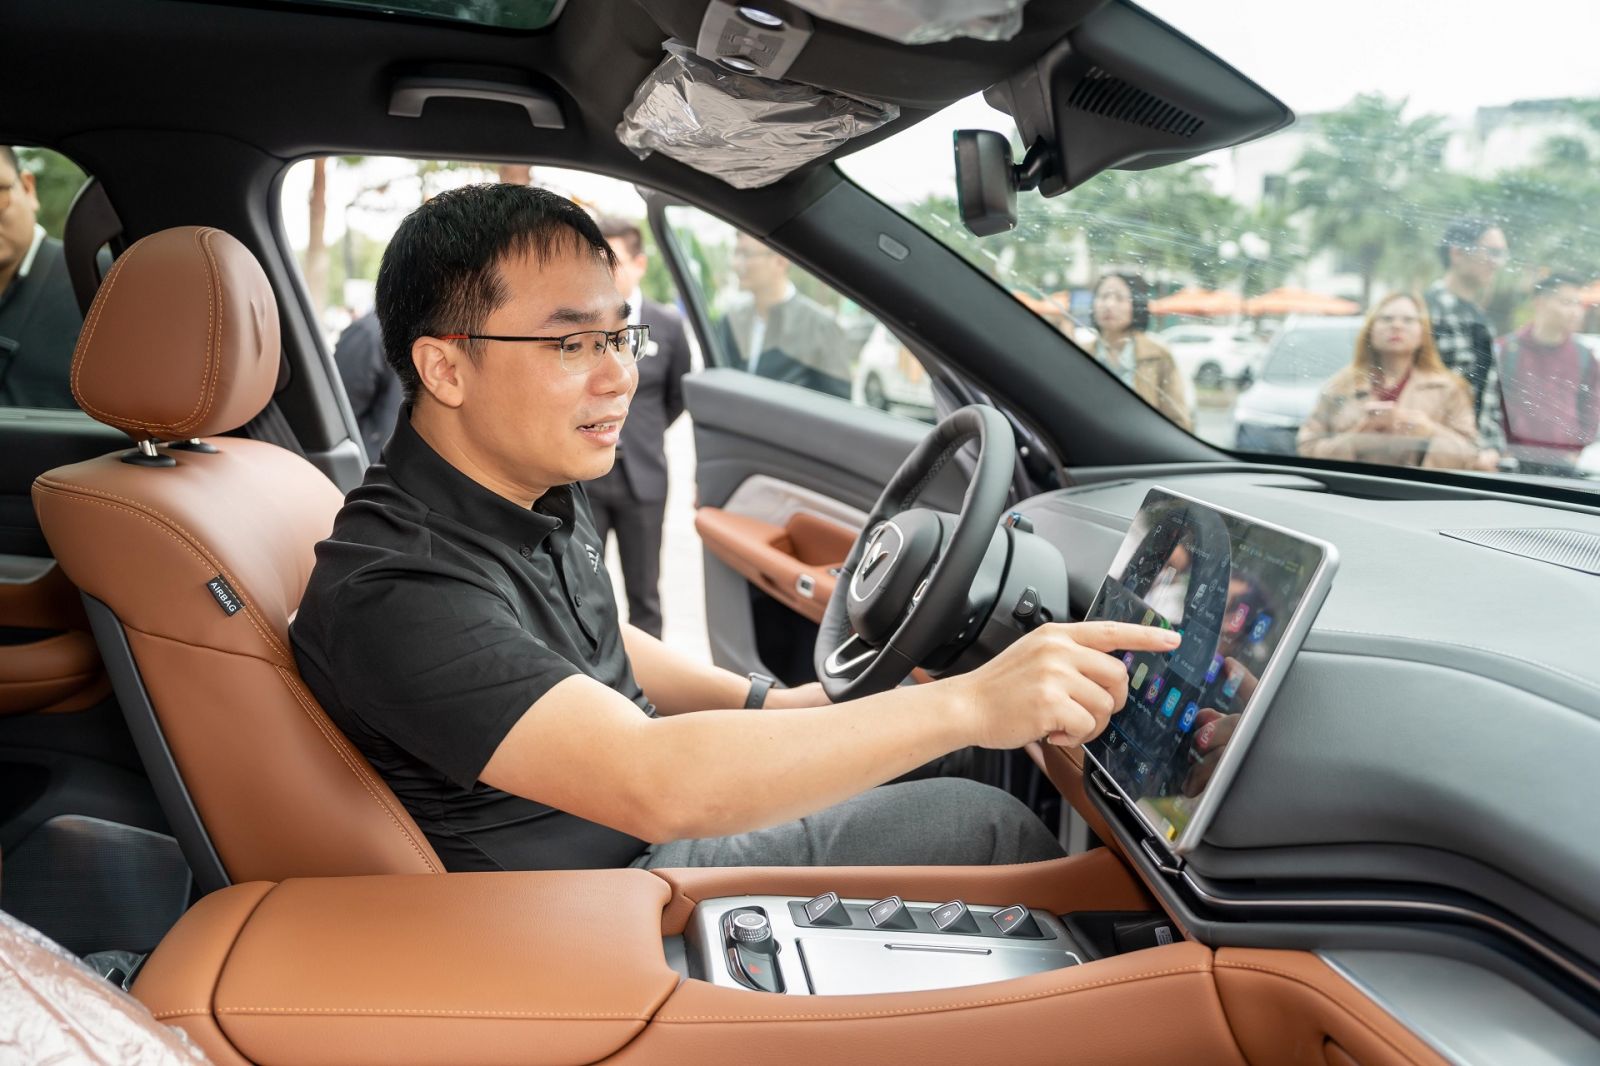 Theo anh Bùi Thành Đô, điểm nhấn công nghệ trên VF 9 nằm ở hệ thống điều khiển trung tâm với trợ lý ảo mang lại trải nghiệm đầy phấn khích và hệ thống an toàn, hỗ trợ lái ADAS tiên tiến.